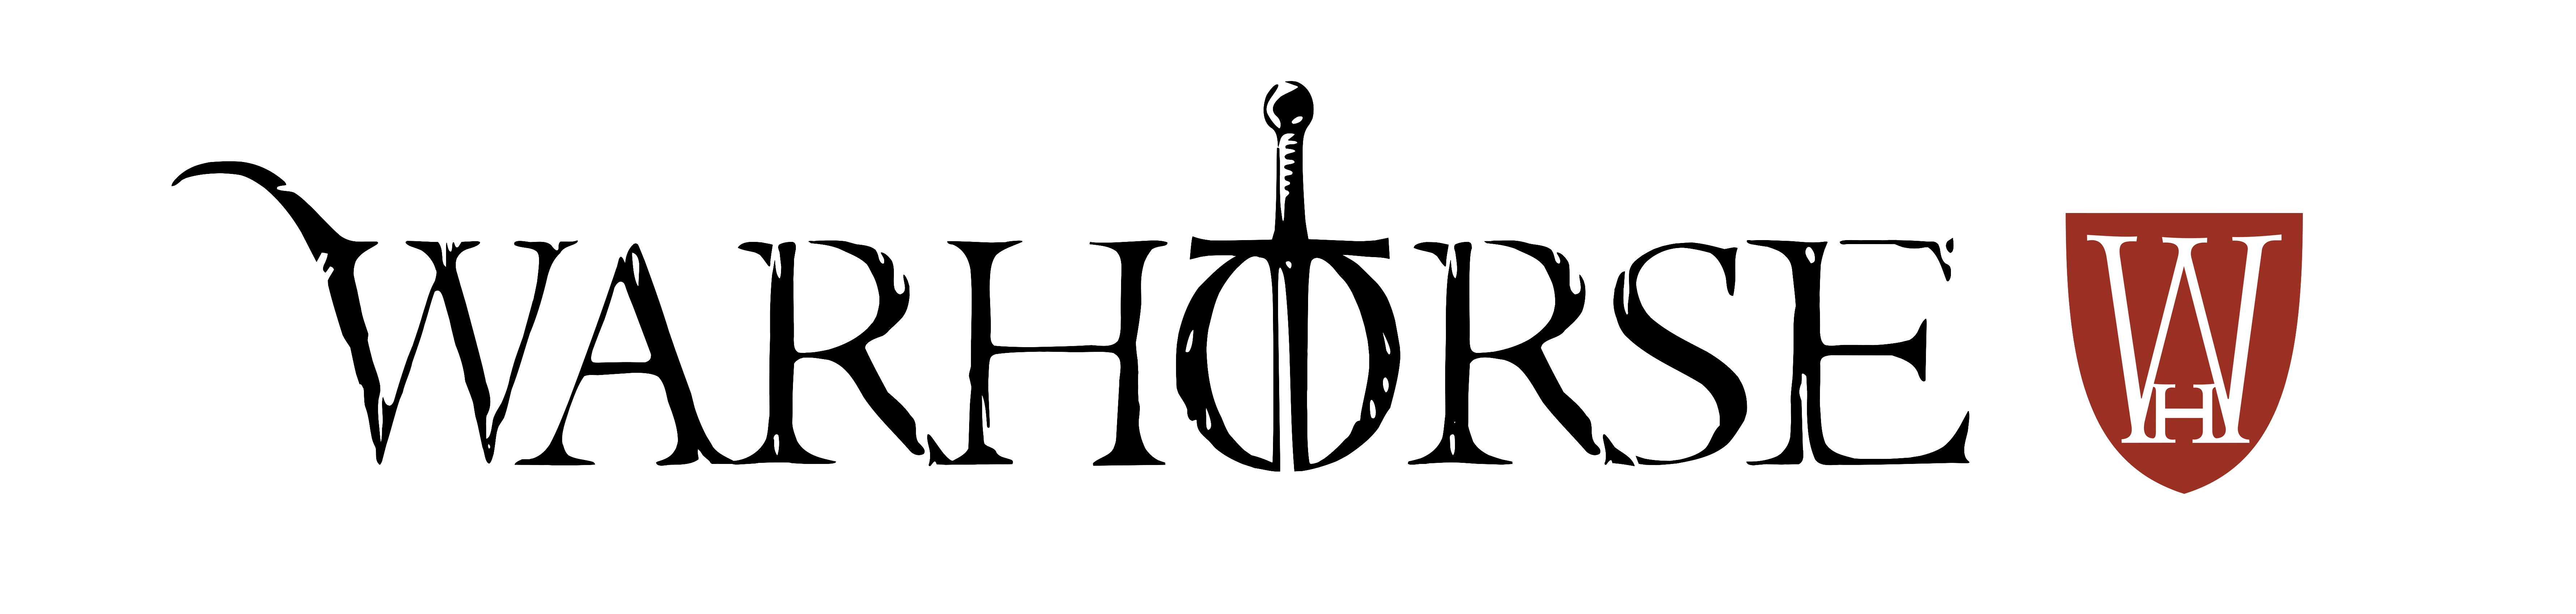 War Horse Logo - Home Studios Studios Press